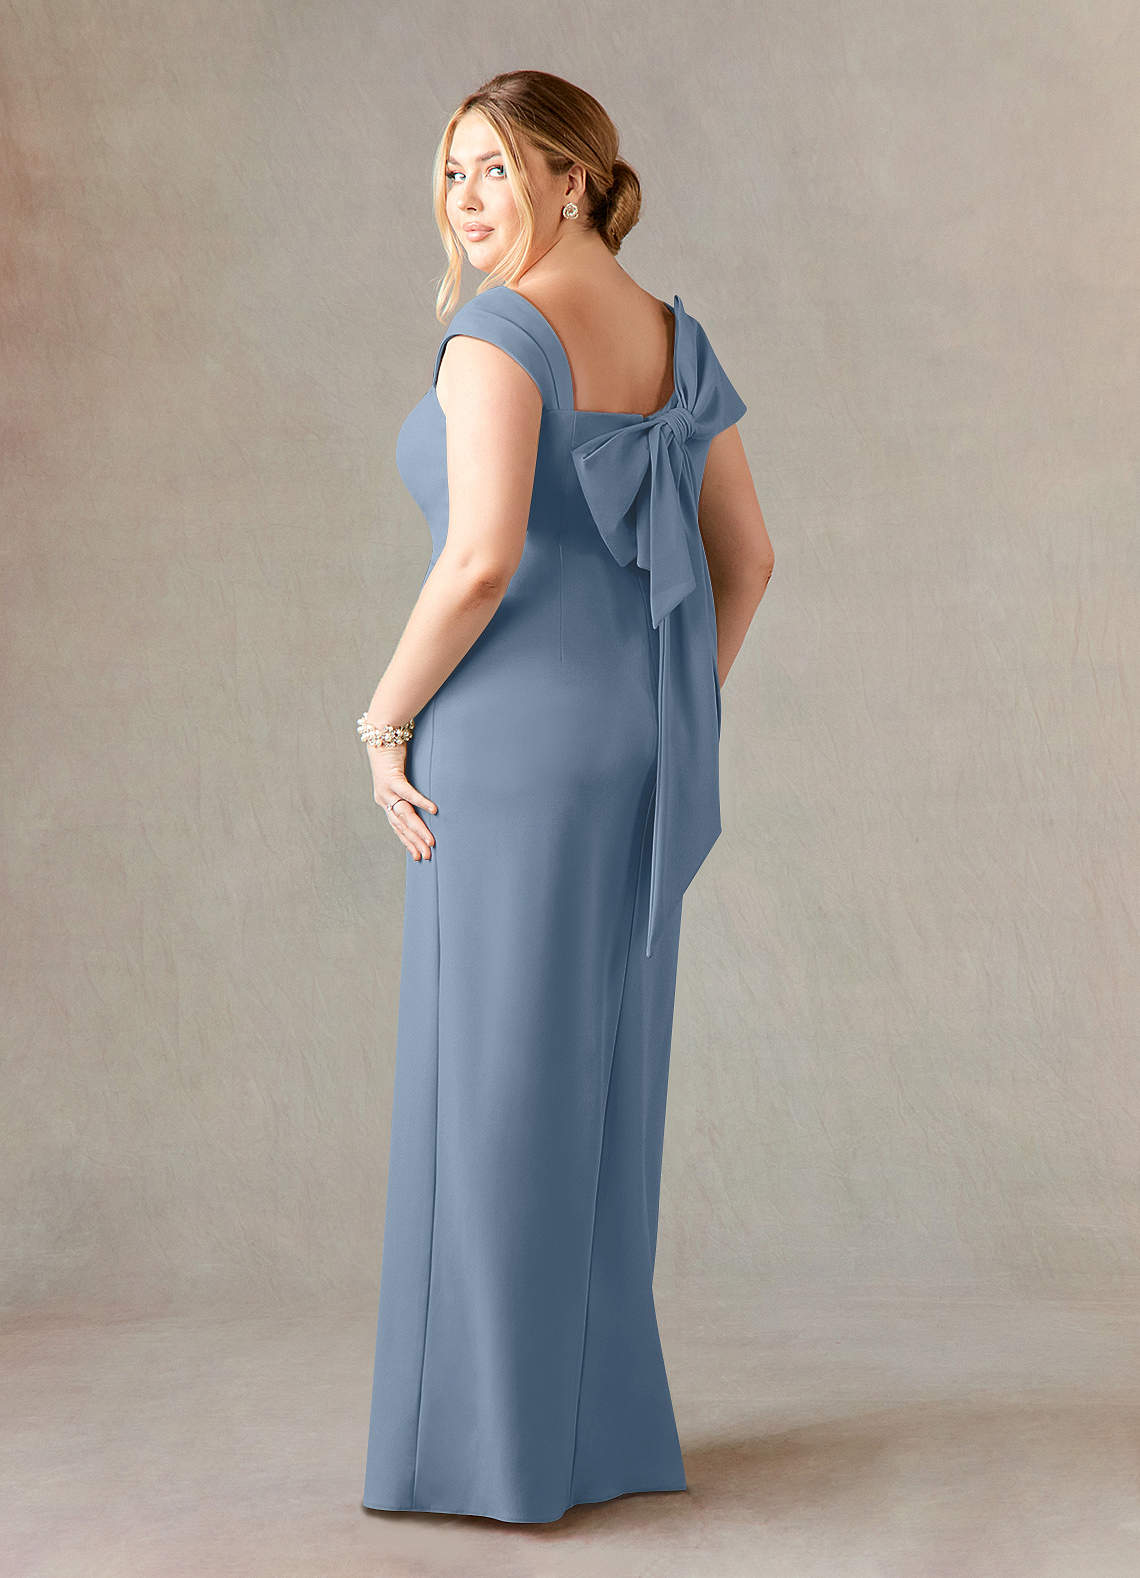 Azazie Ellen Mother of the Bride Dresses Sheath Side Slit Stretch Crepe Floor-Length Dress image1